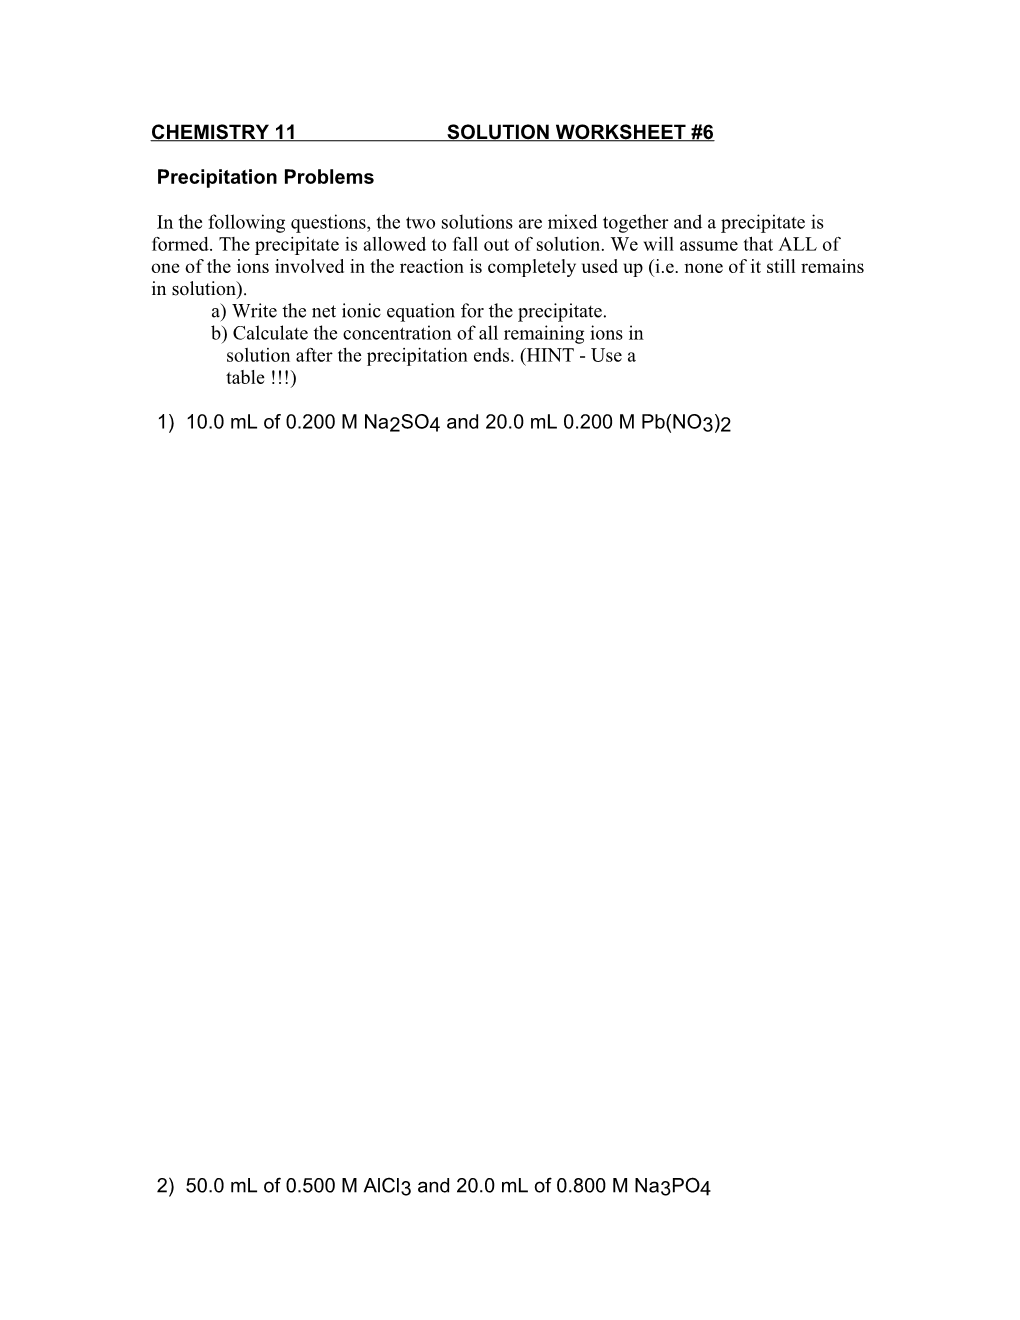 Chemistry 11 Solution Worksheet #4